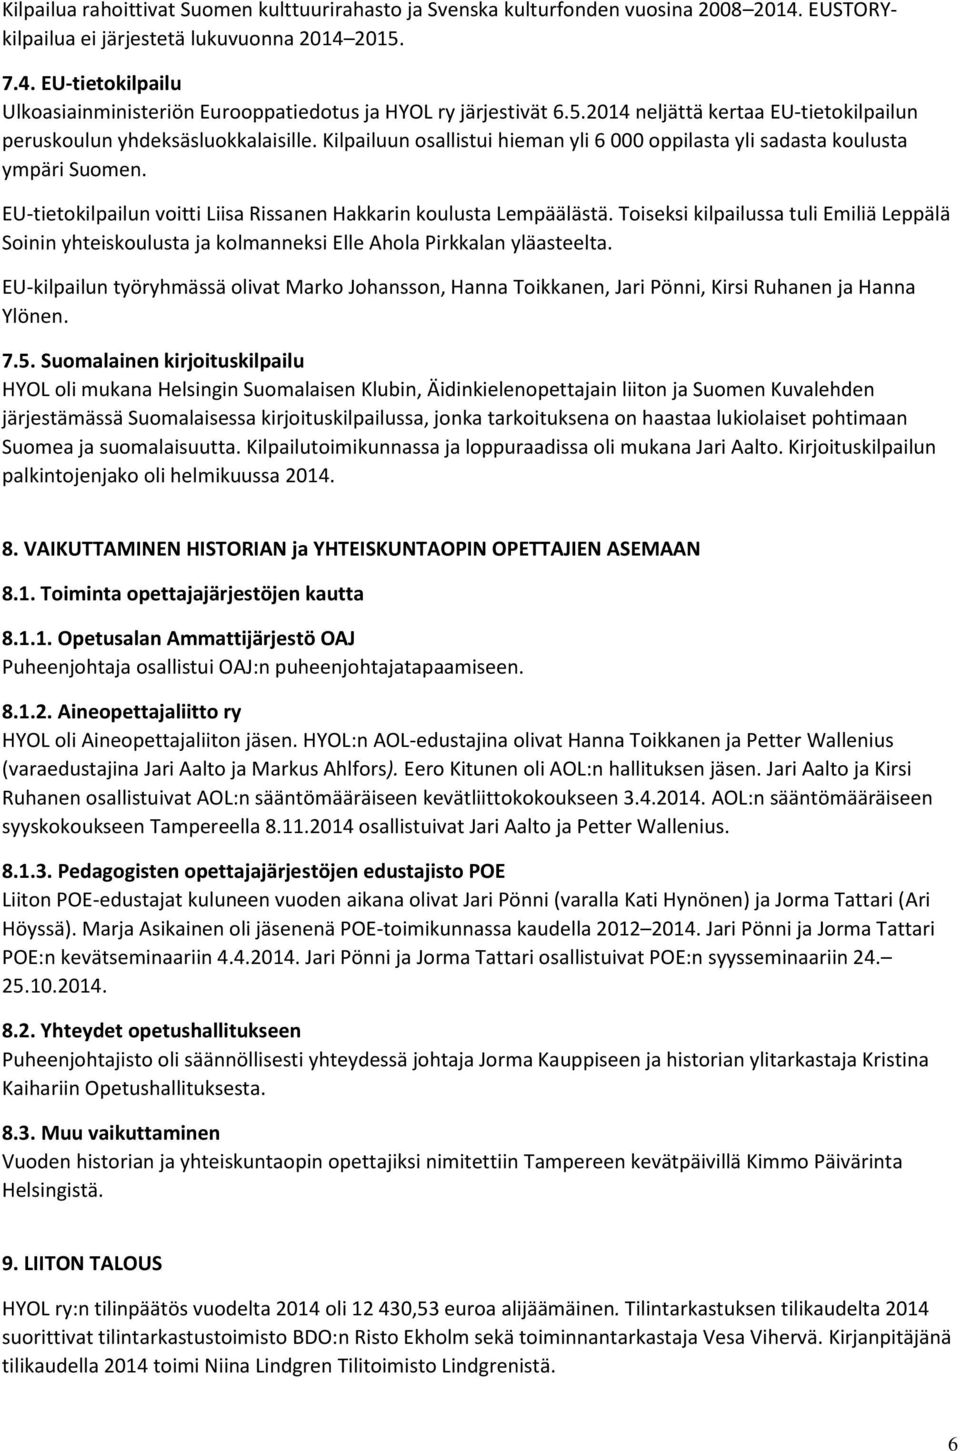 EU-tietokilpailun voitti Liisa Rissanen Hakkarin koulusta Lempäälästä. Toiseksi kilpailussa tuli Emiliä Leppälä Soinin yhteiskoulusta ja kolmanneksi Elle Ahola Pirkkalan yläasteelta.